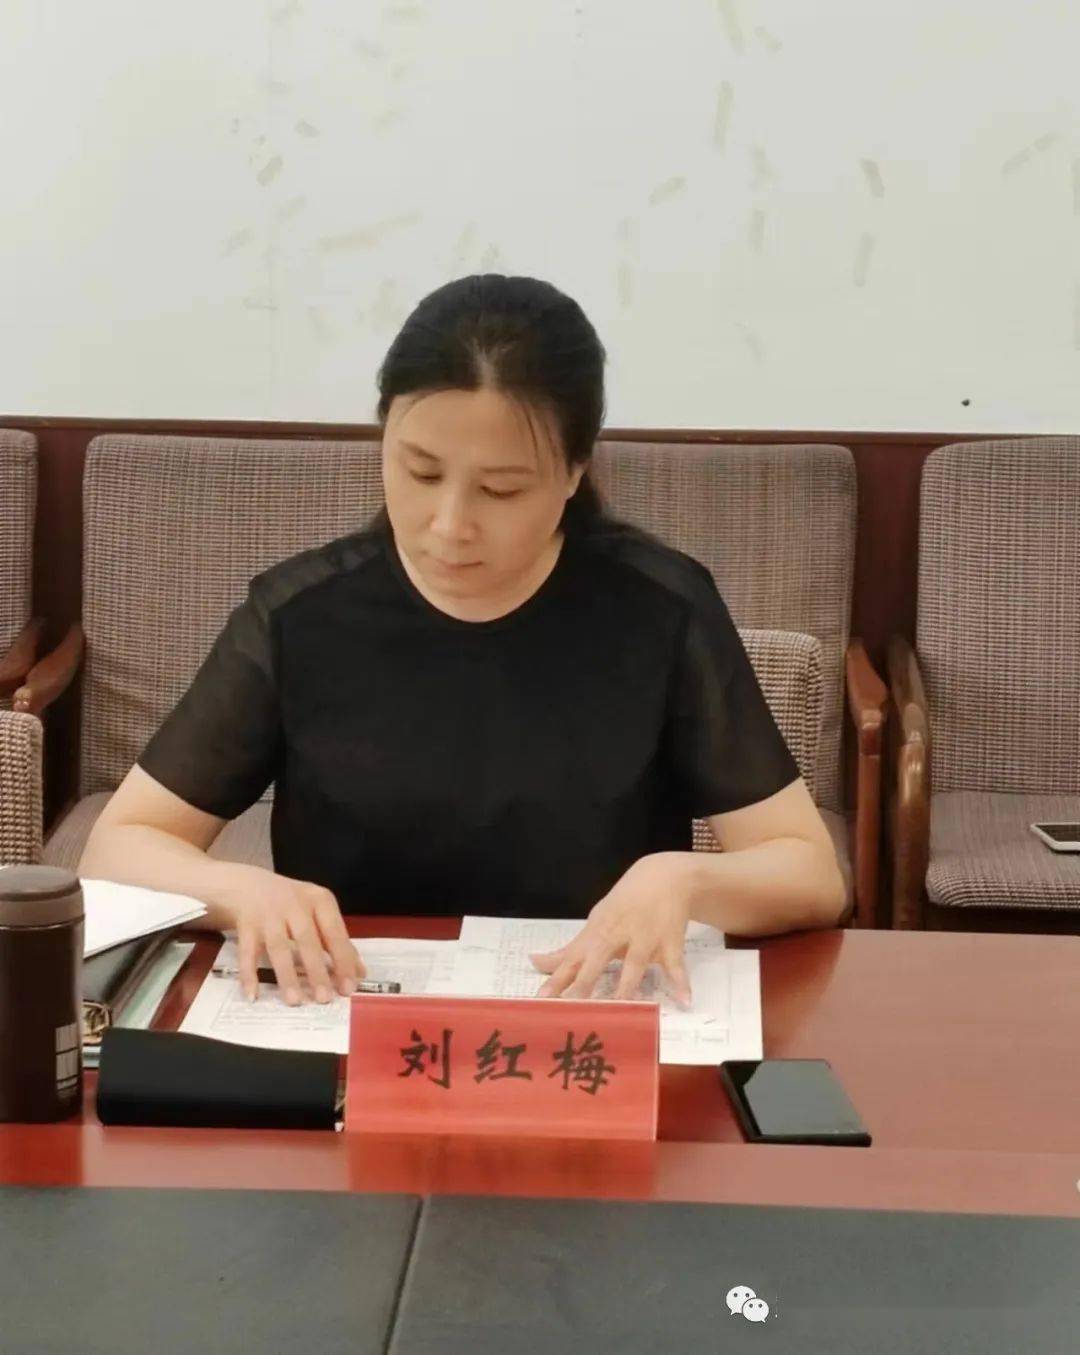 路南区政府副区长刘红梅调度质量强省(市)考核指标工作